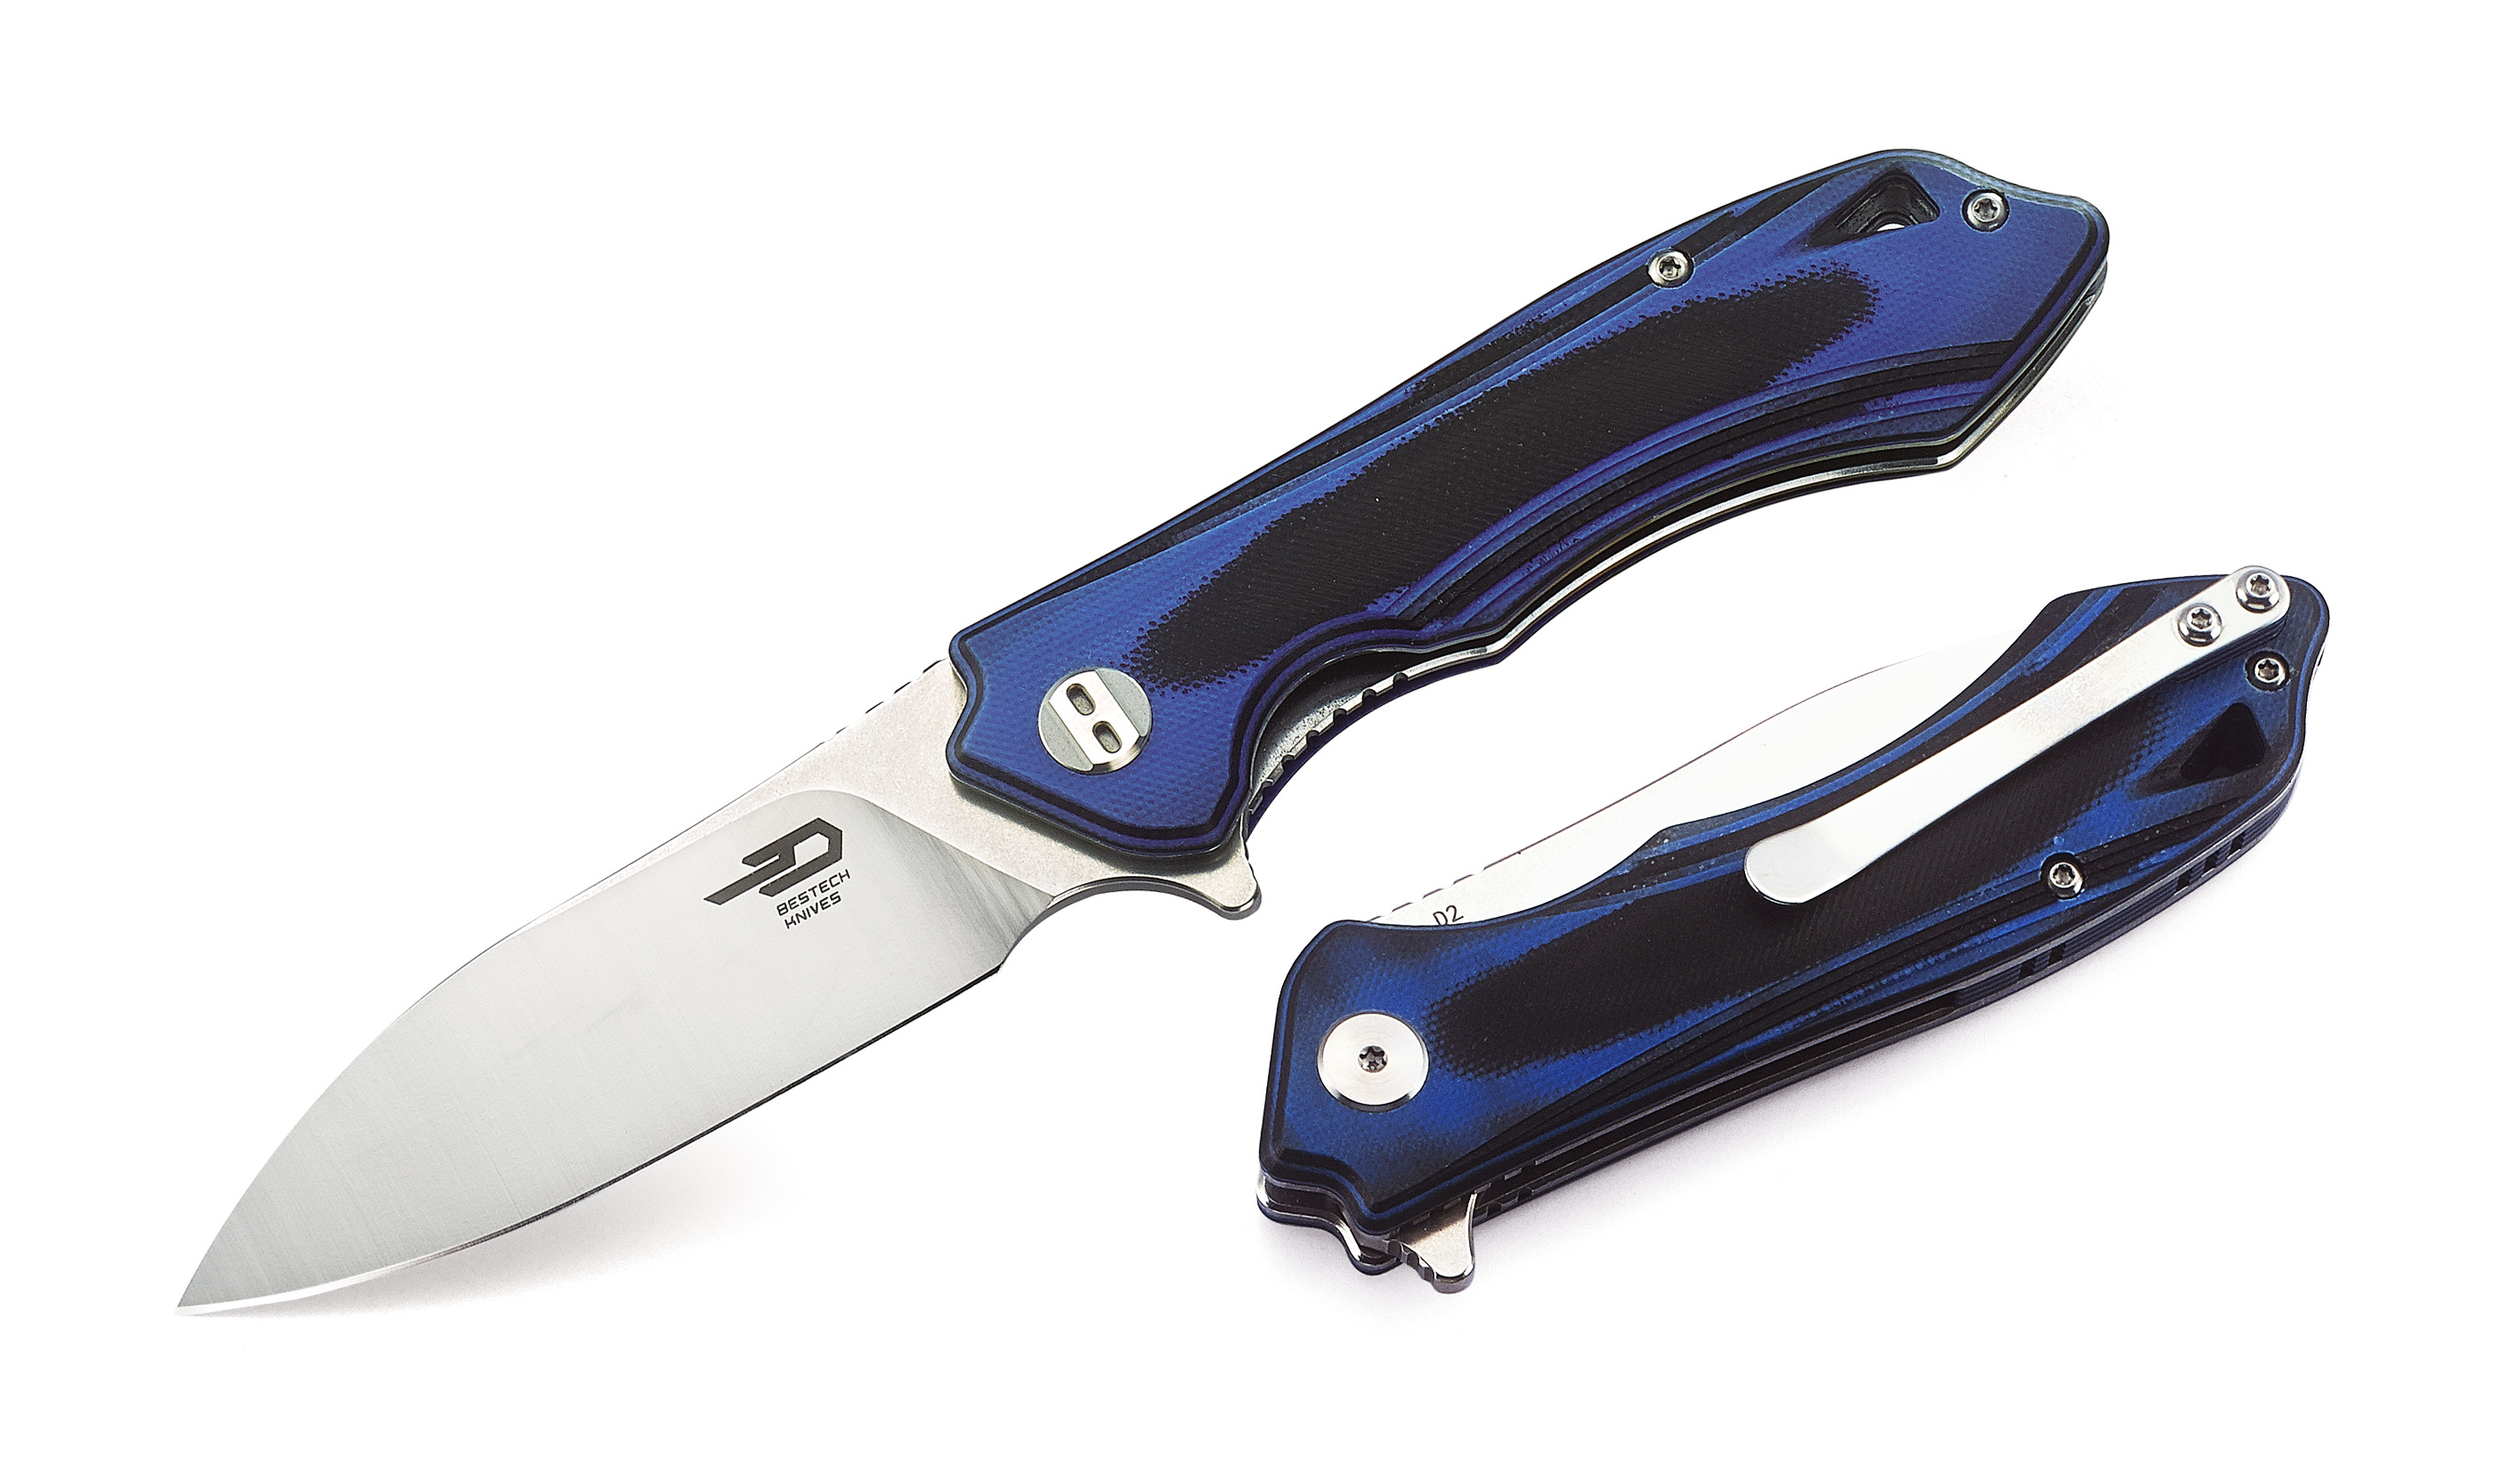 Bestech Beluga Flipper Folding Knife, D2 Two-Tone, G10 Blue/Black, BG11G-2